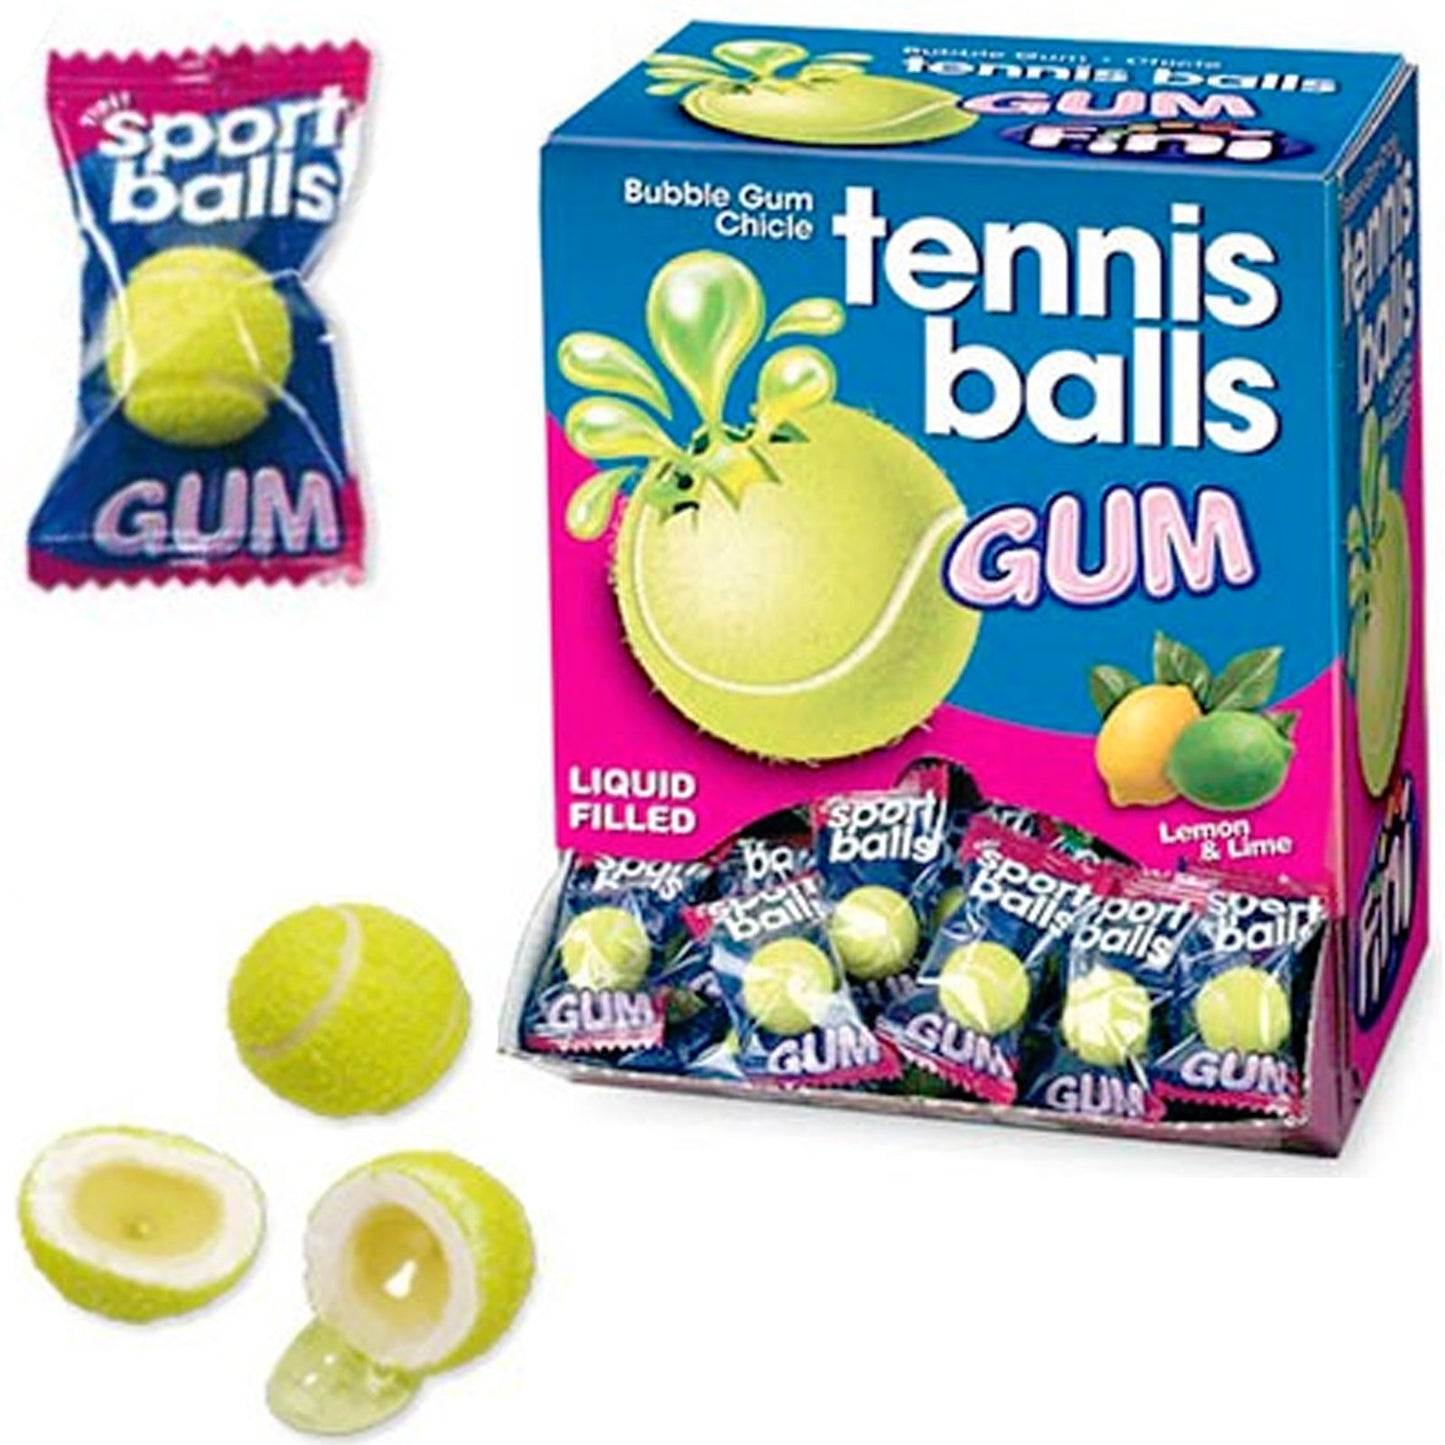 Fini tennis ball gum